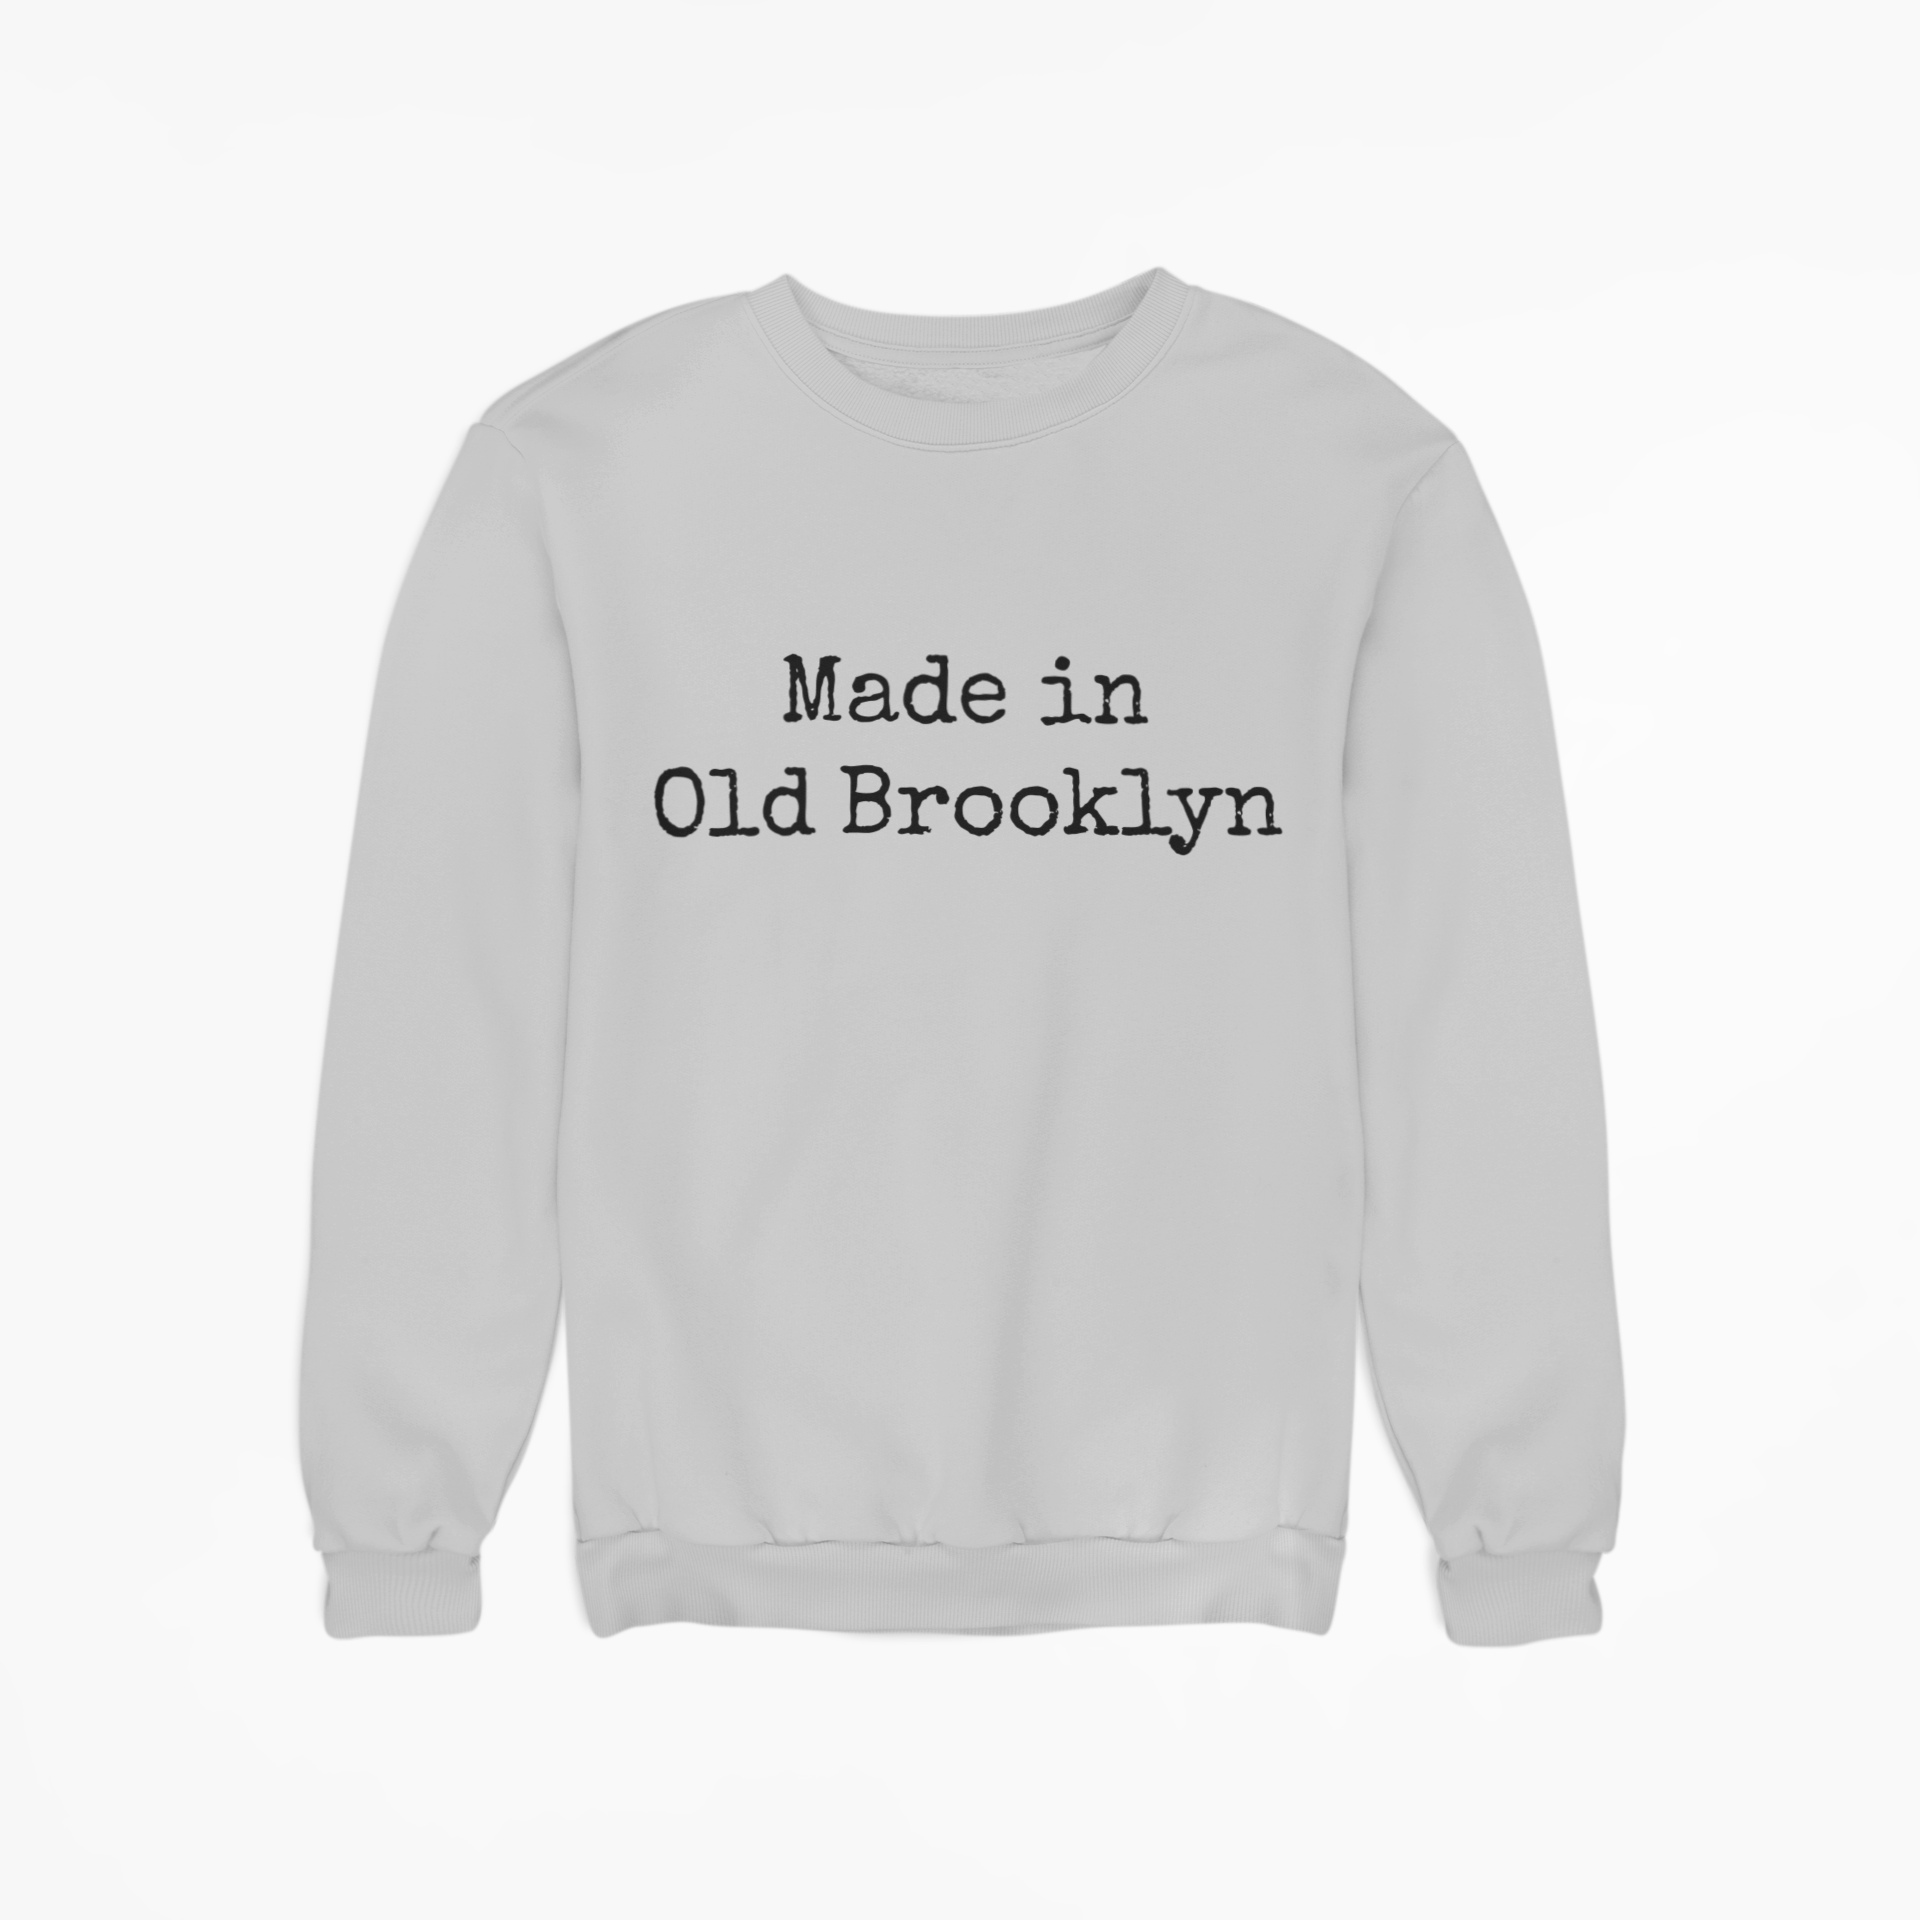 Made in Old Brooklyn Sweatshirt